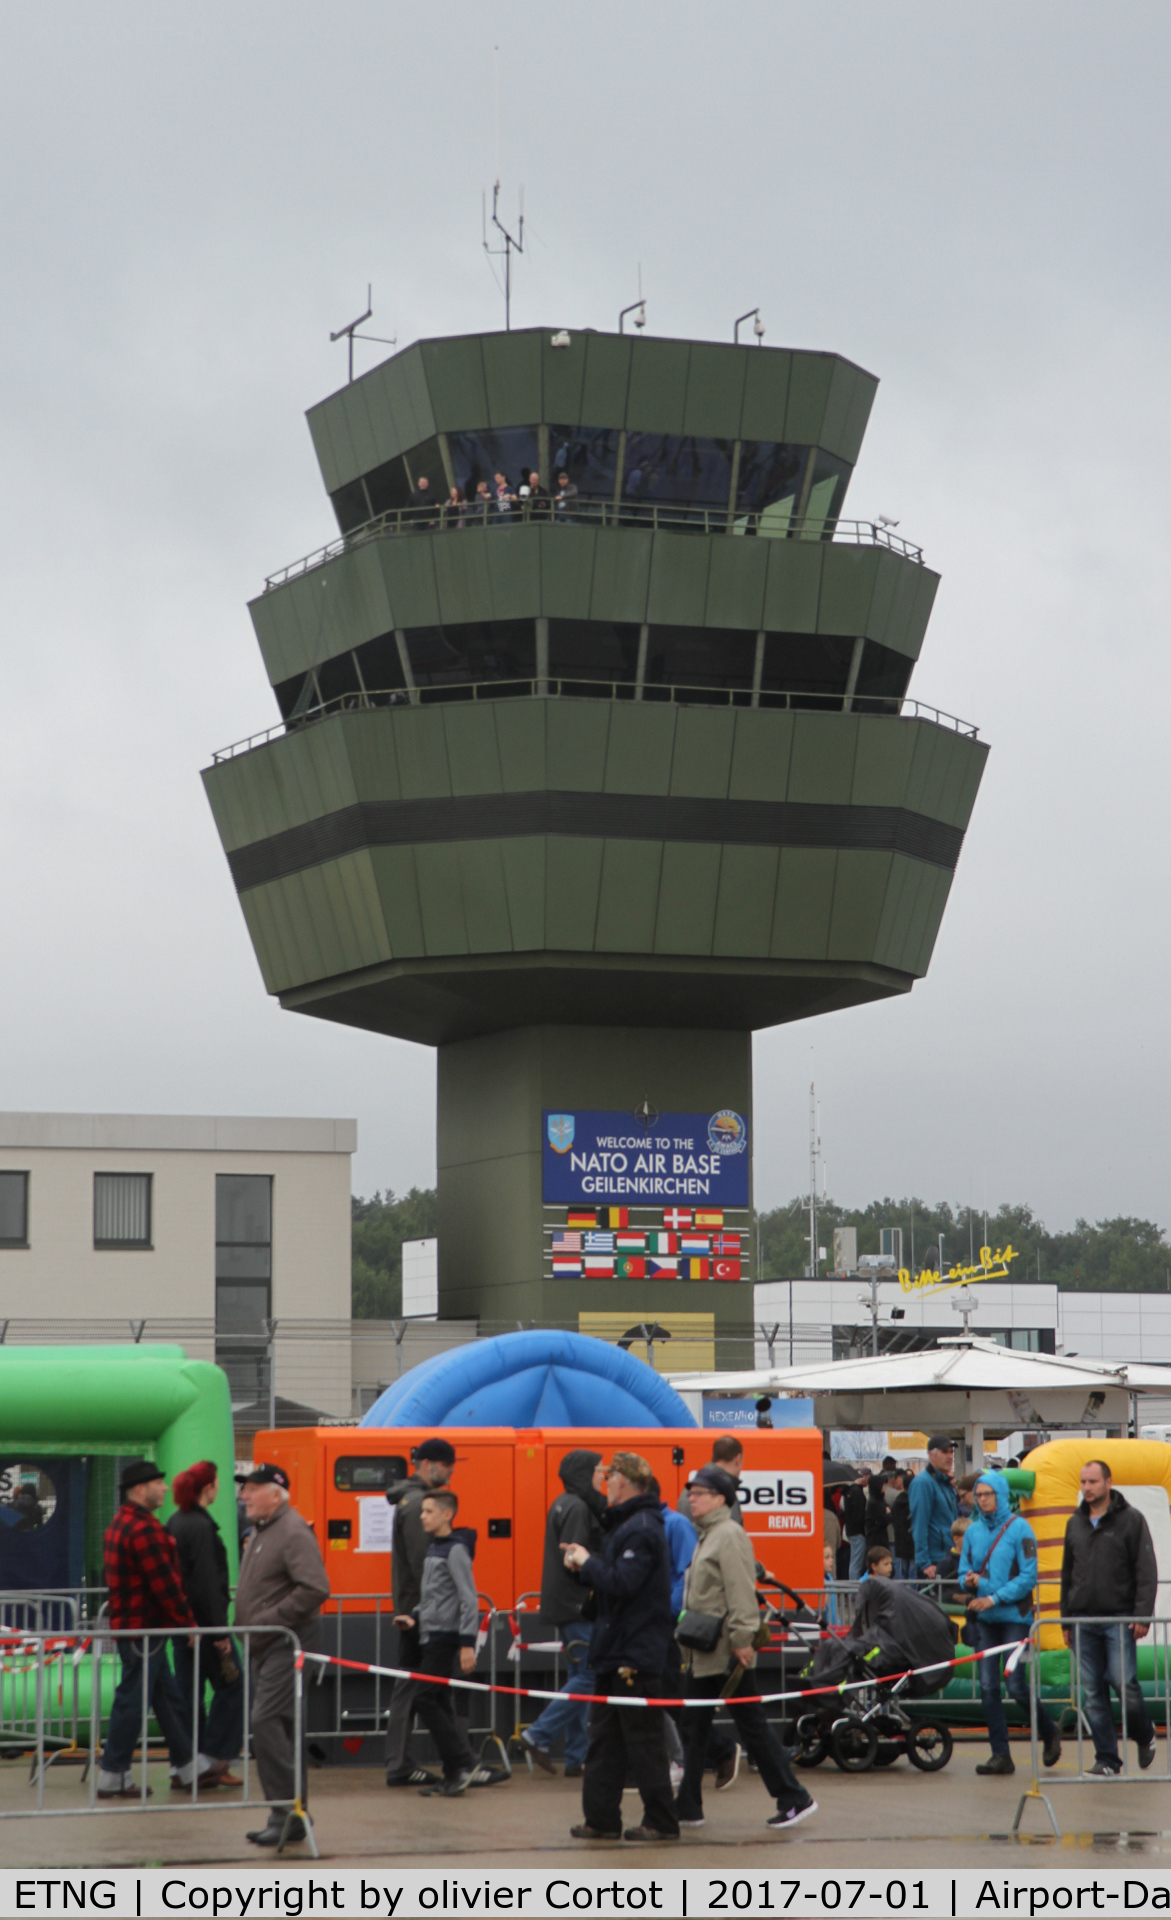 NATO Air Base Geilenkirchen Airport, Geilenkirchen Germany (ETNG) Photo